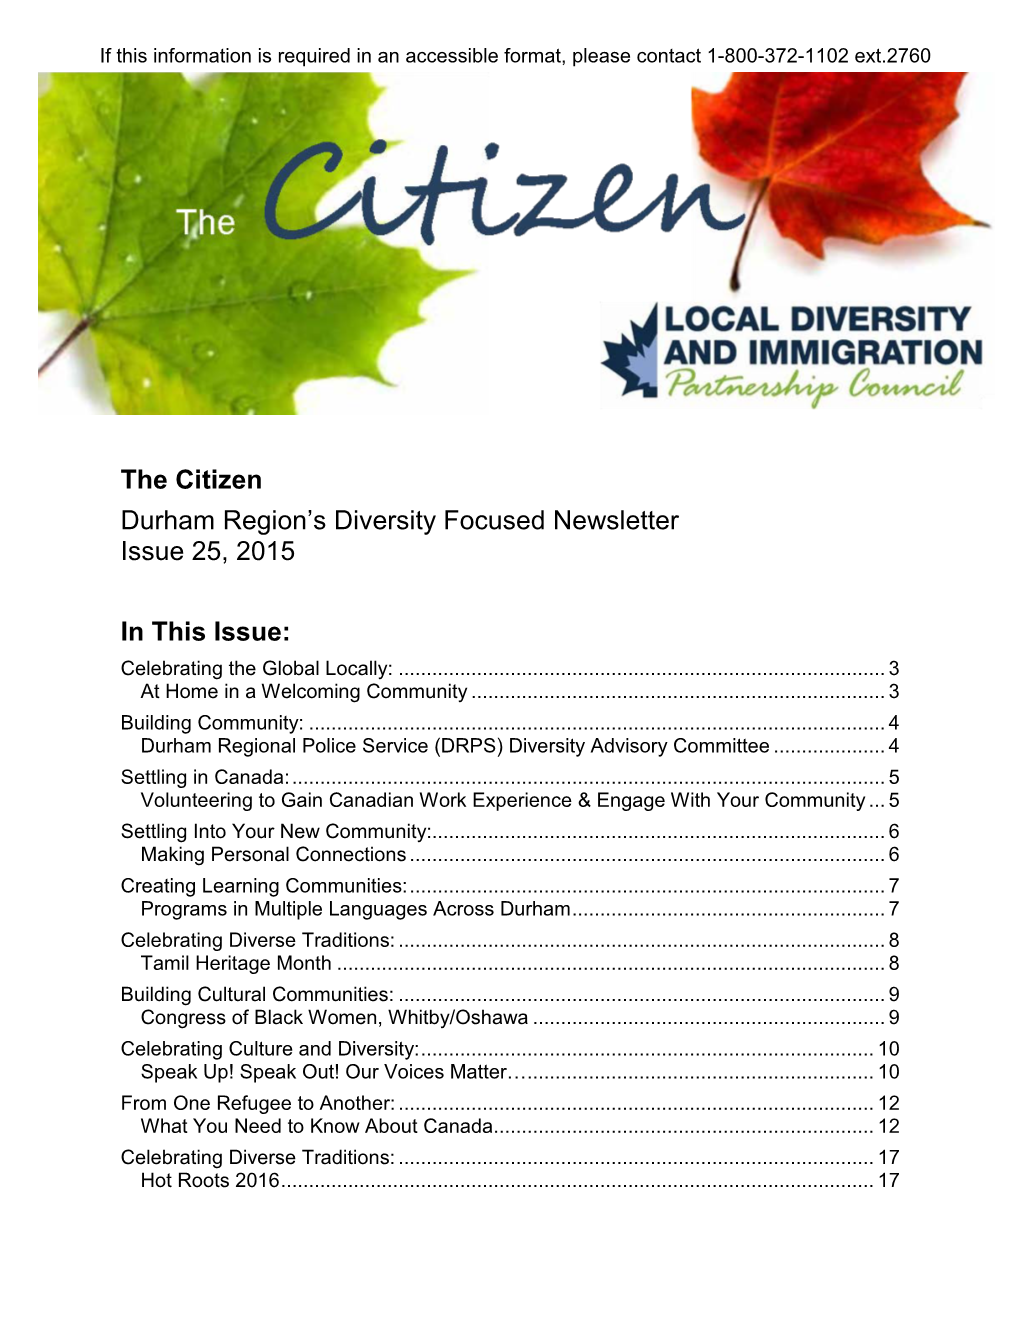 The Citizen Durham Region’S Diversity Focused Newsletter Issue 25, 2015